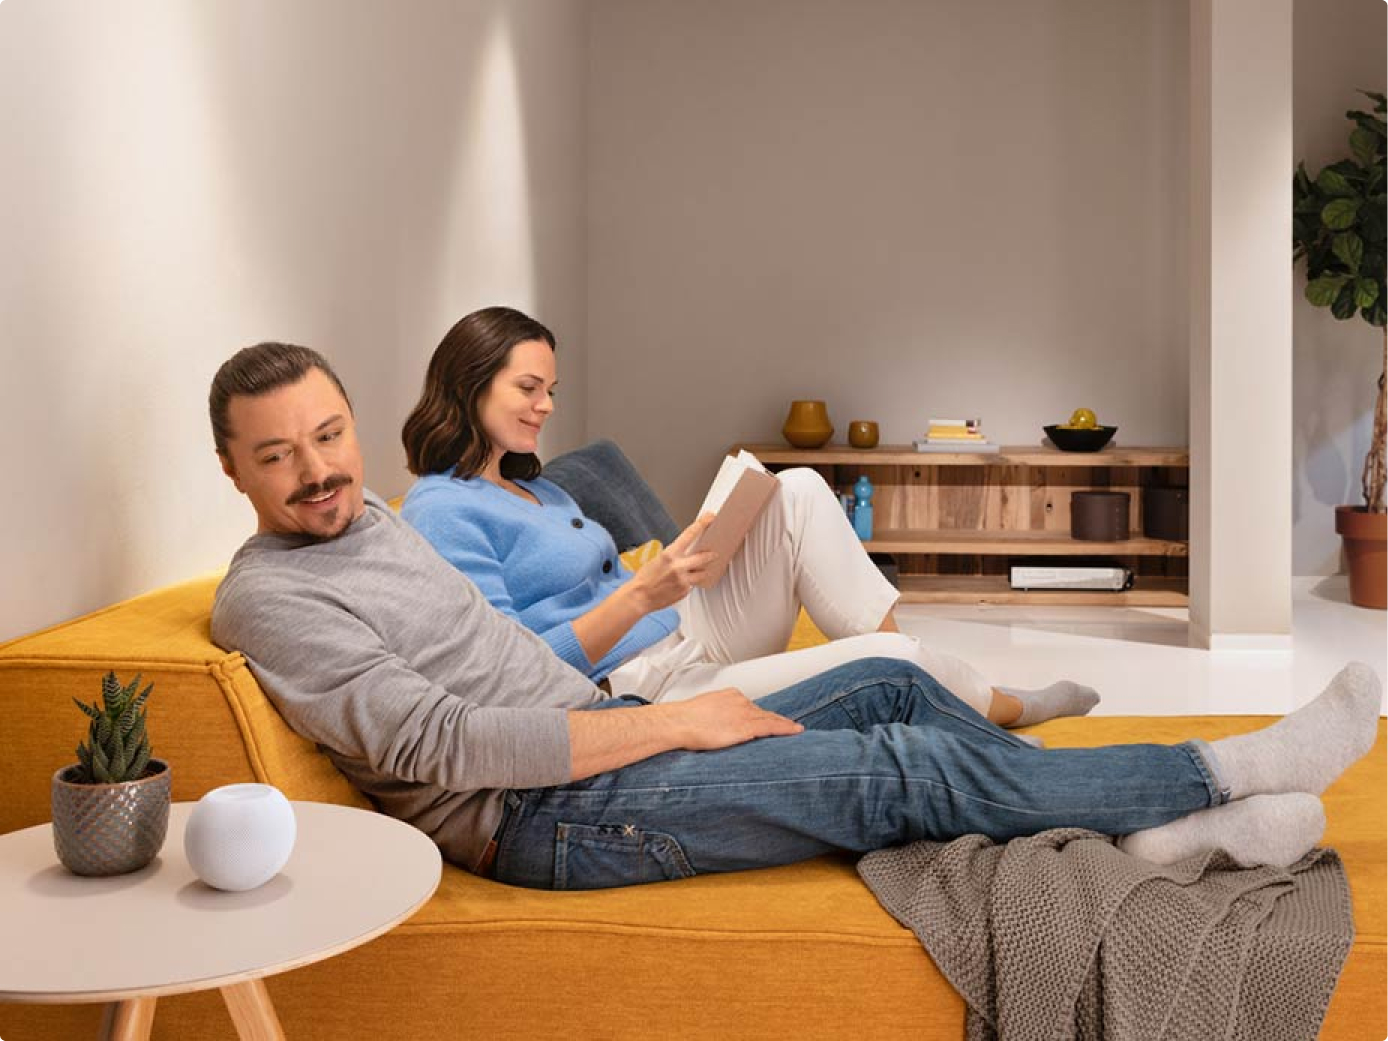 Ein Paar sitzt auf dem Sofa, sie ließt und er erteilt einen Sprachbefehl an einen Sprachassistenten.